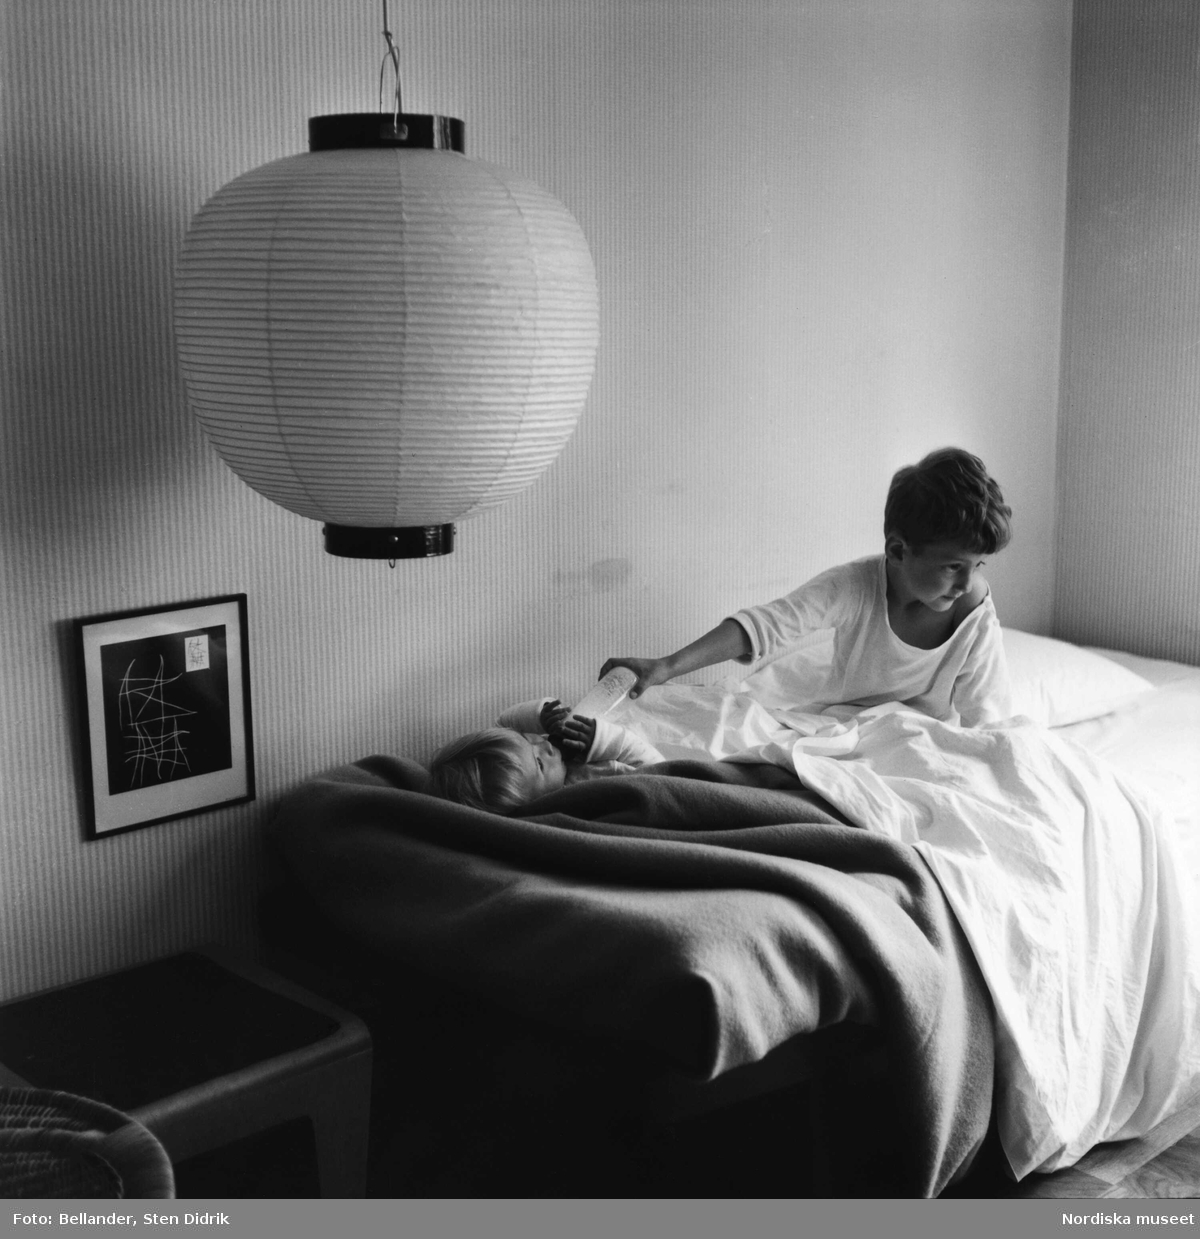 Fotografens son ger sin lillasyster nappflaskan en morgon i sängen.